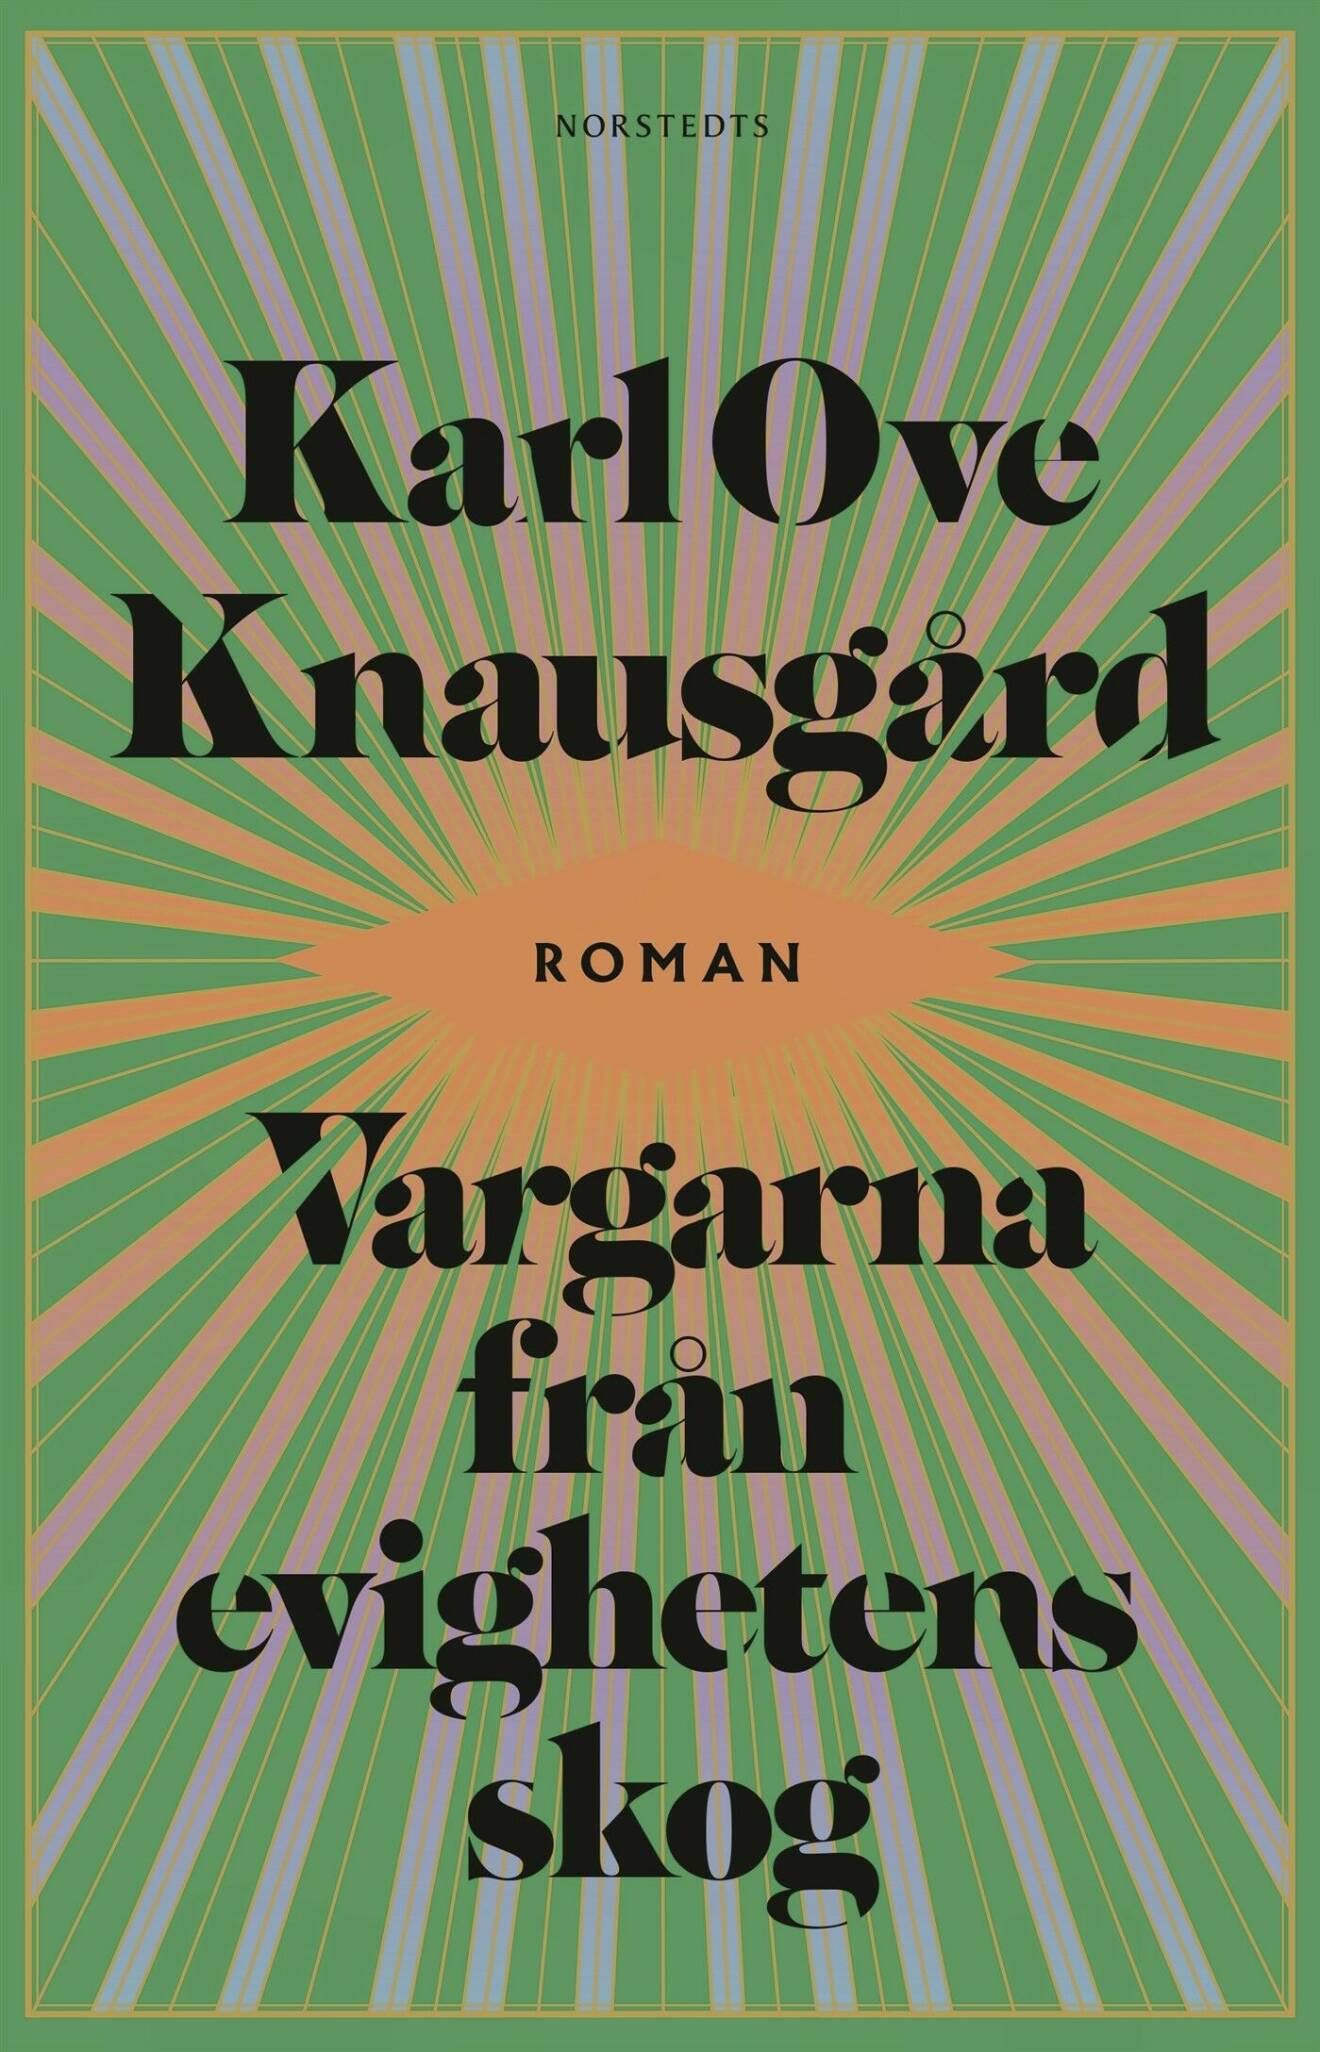 Vargarna från evighetens skog av Karl-Ove Knausgård.